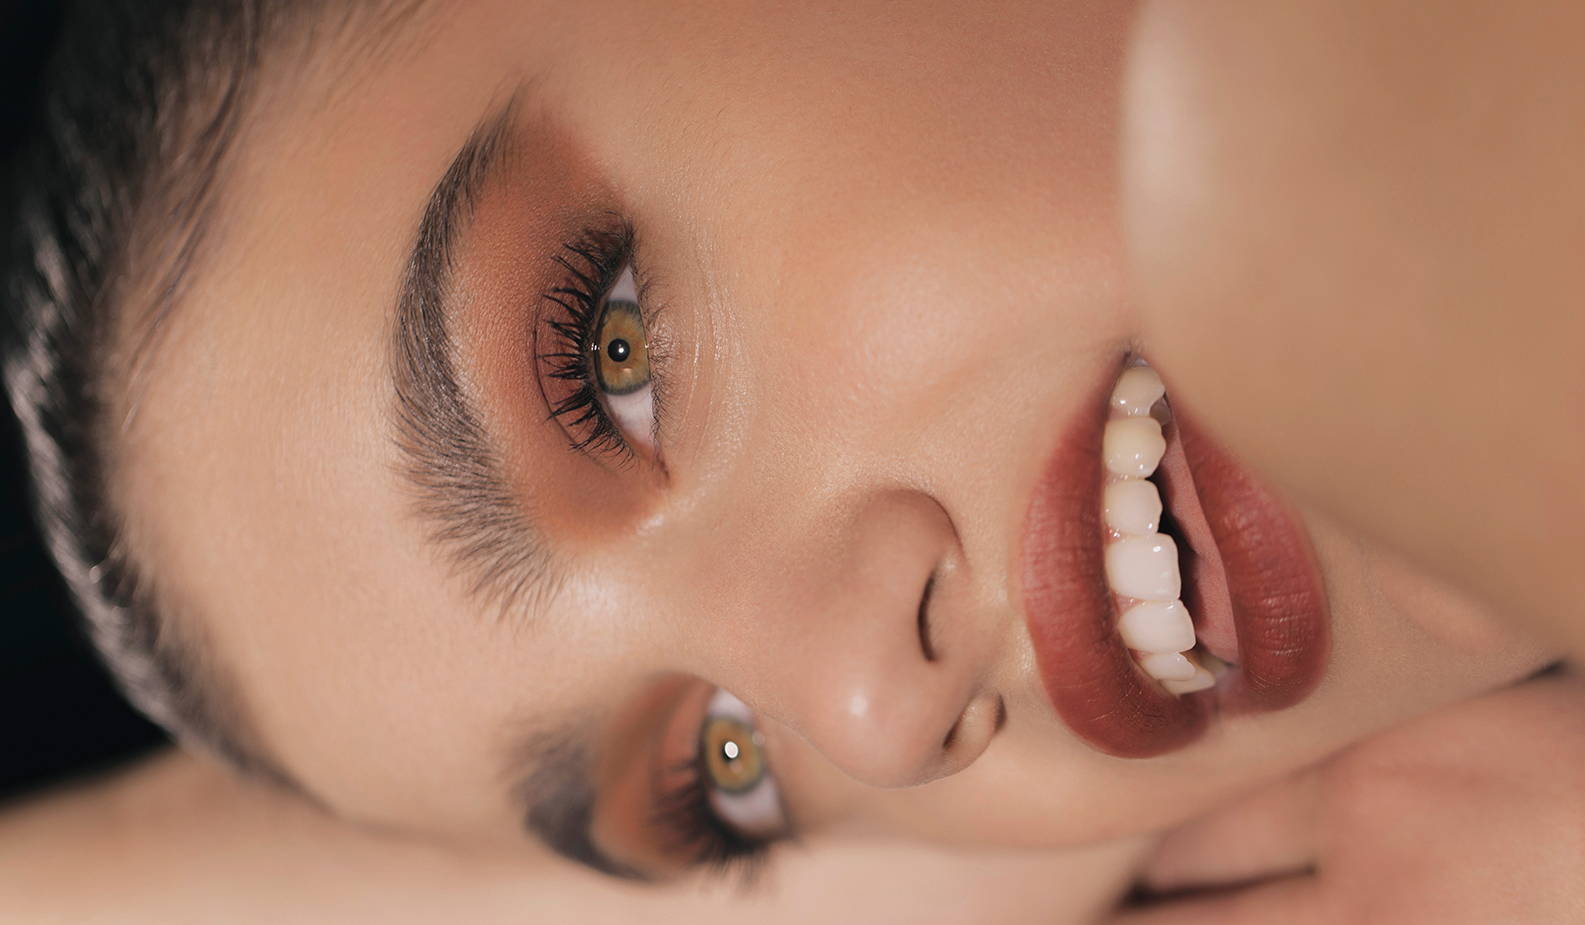 Makeup Artist Pati Dubroff's '90s Makeup Tutorial – Rose Inc